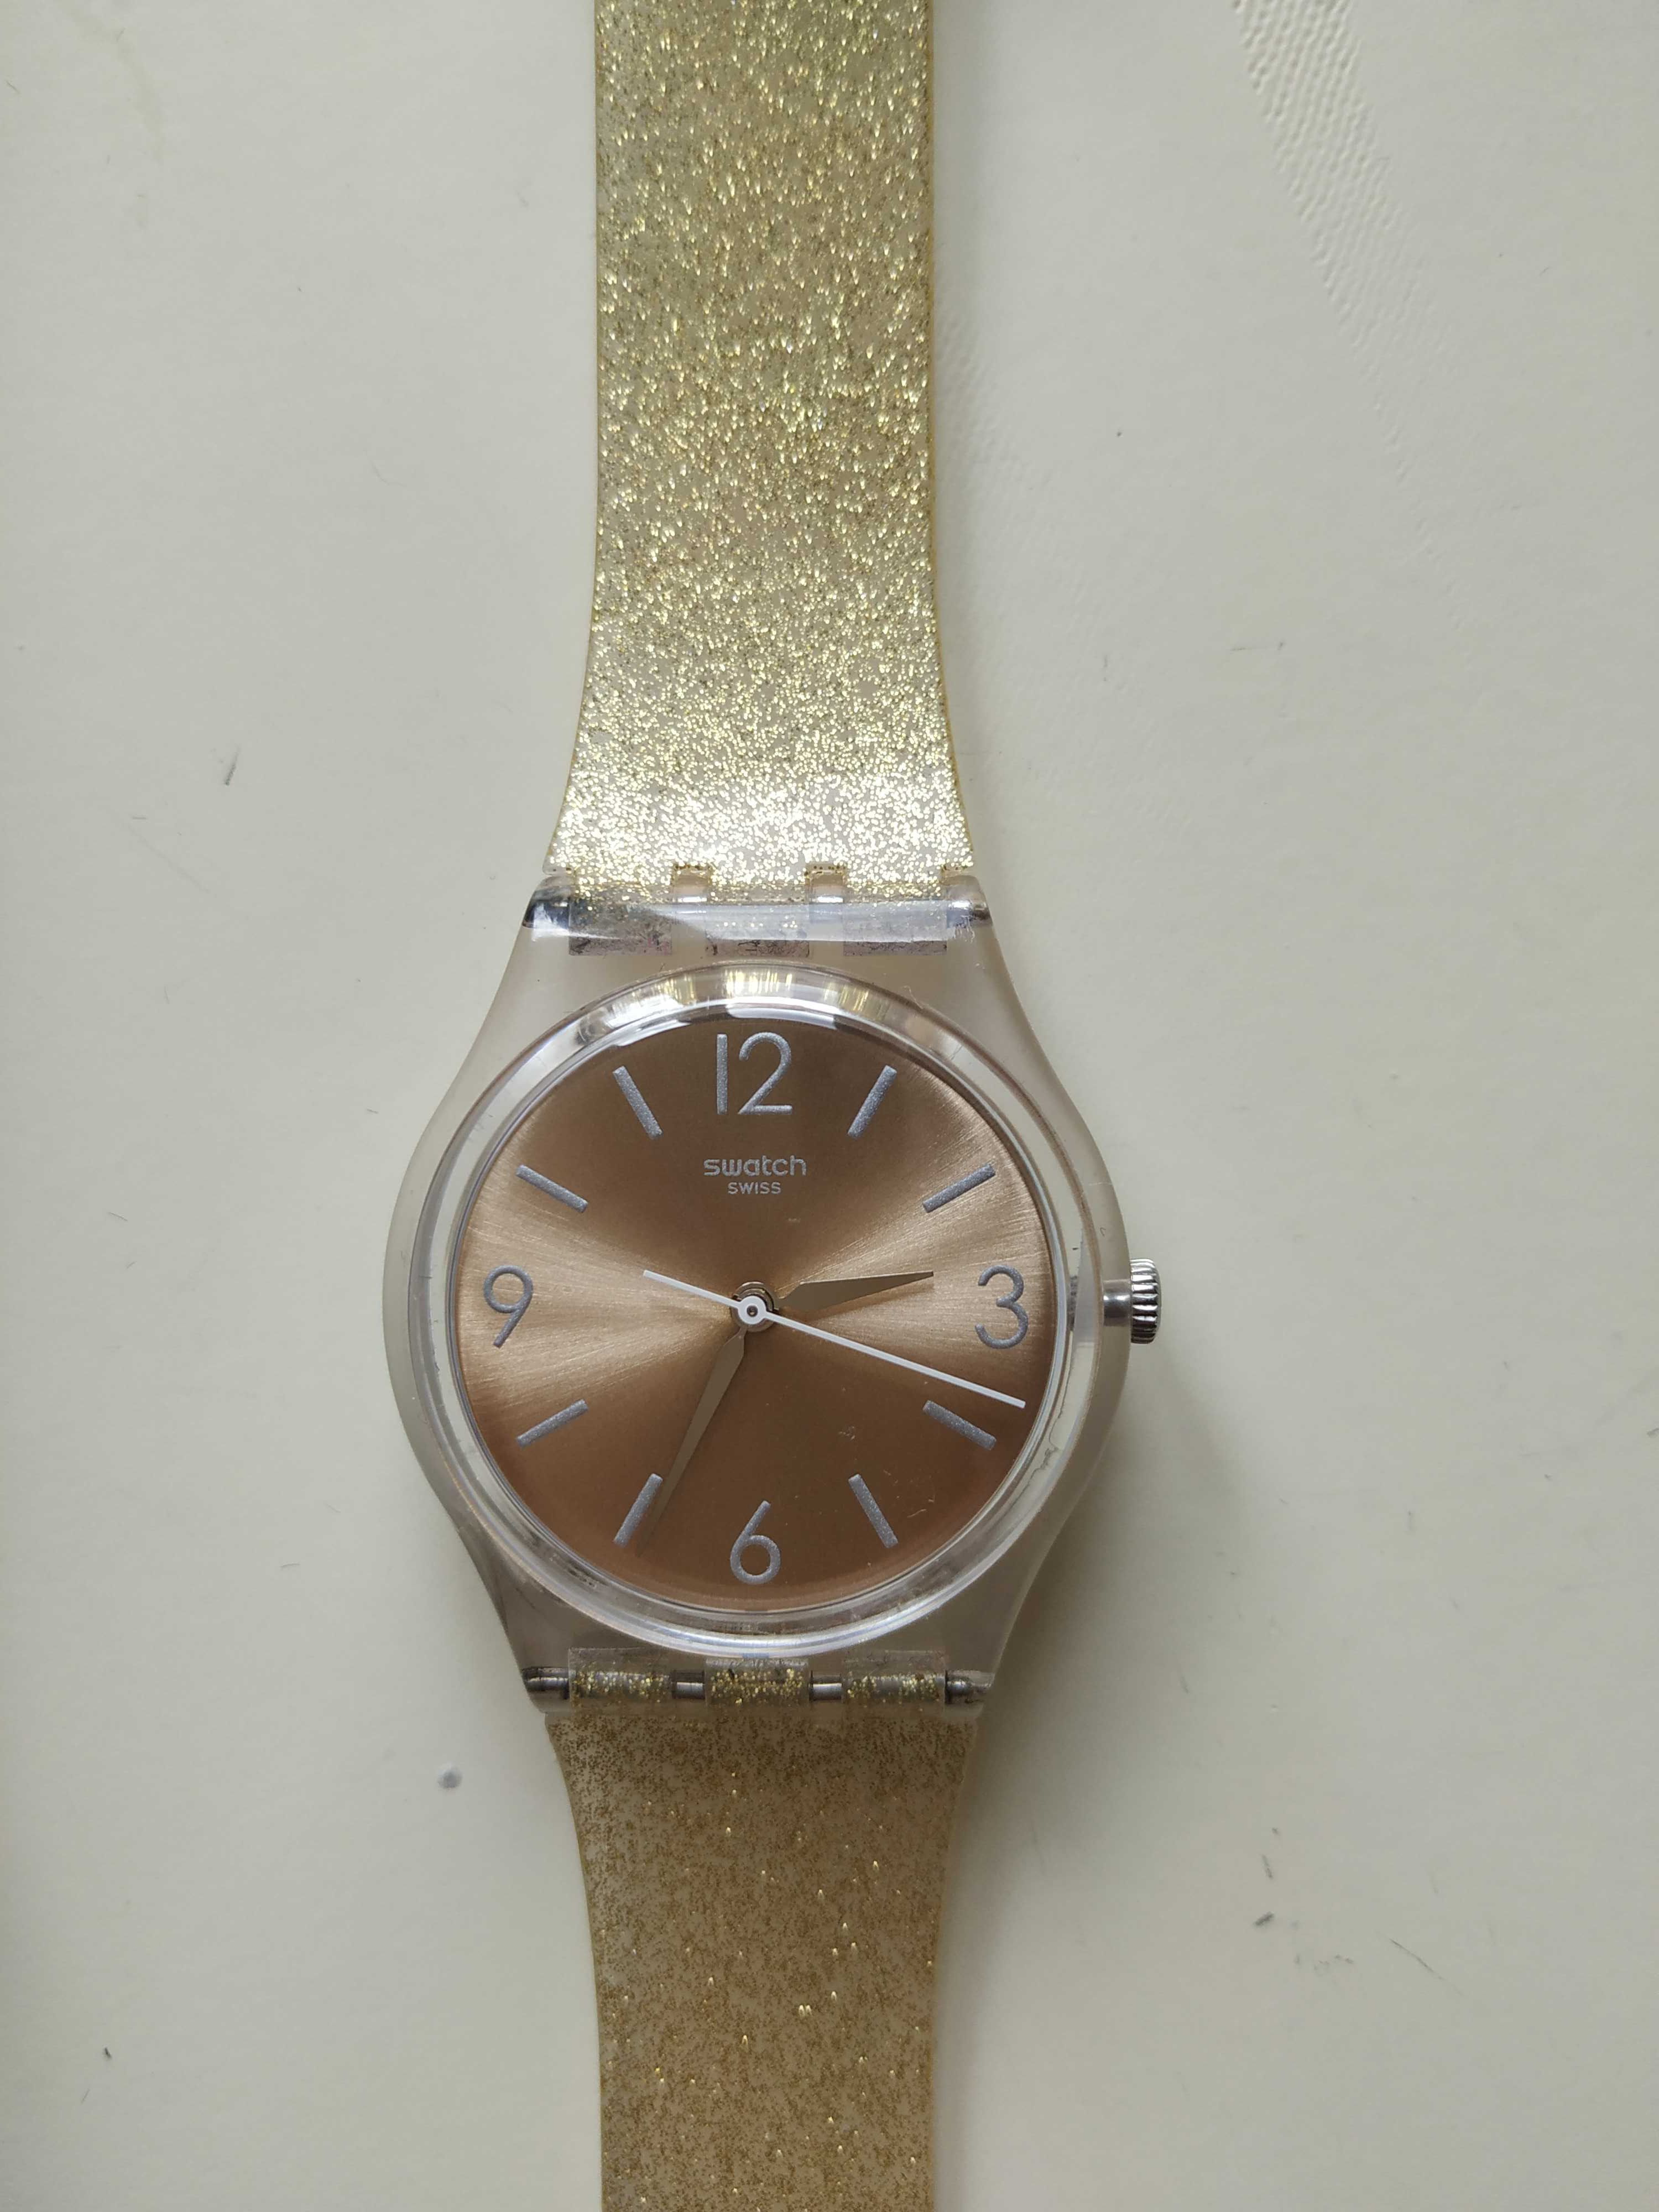 Relógio Swatch bracelete dourada e brilhantes